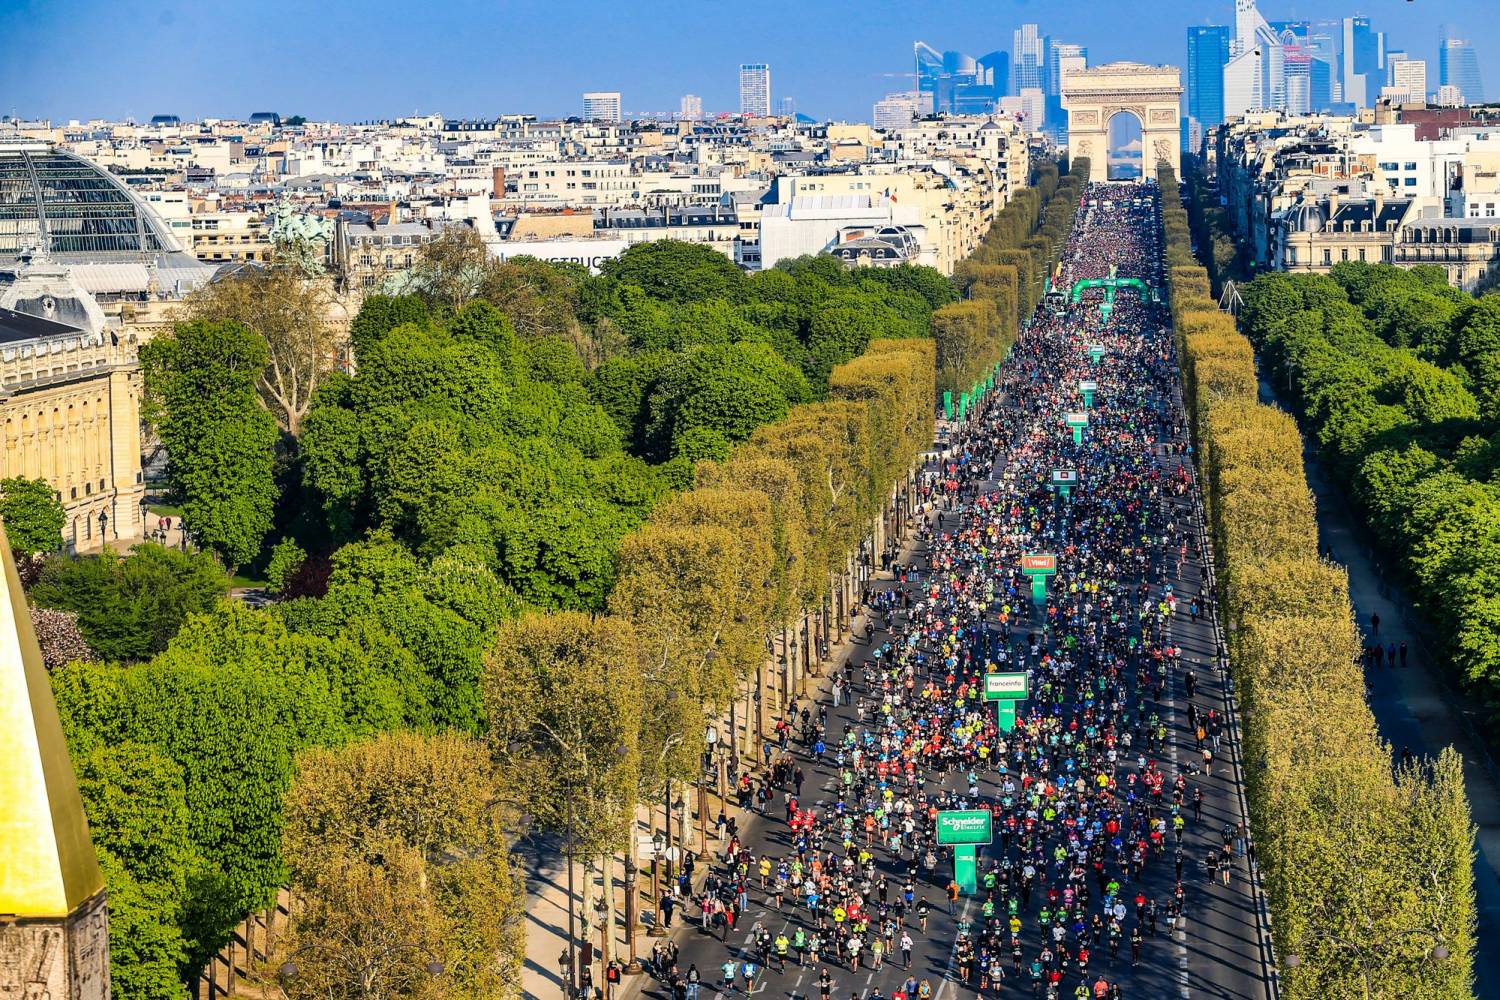 Nhà thờ Đức Bà chỉ còn trong ký ức những runner dự Paris Marathon